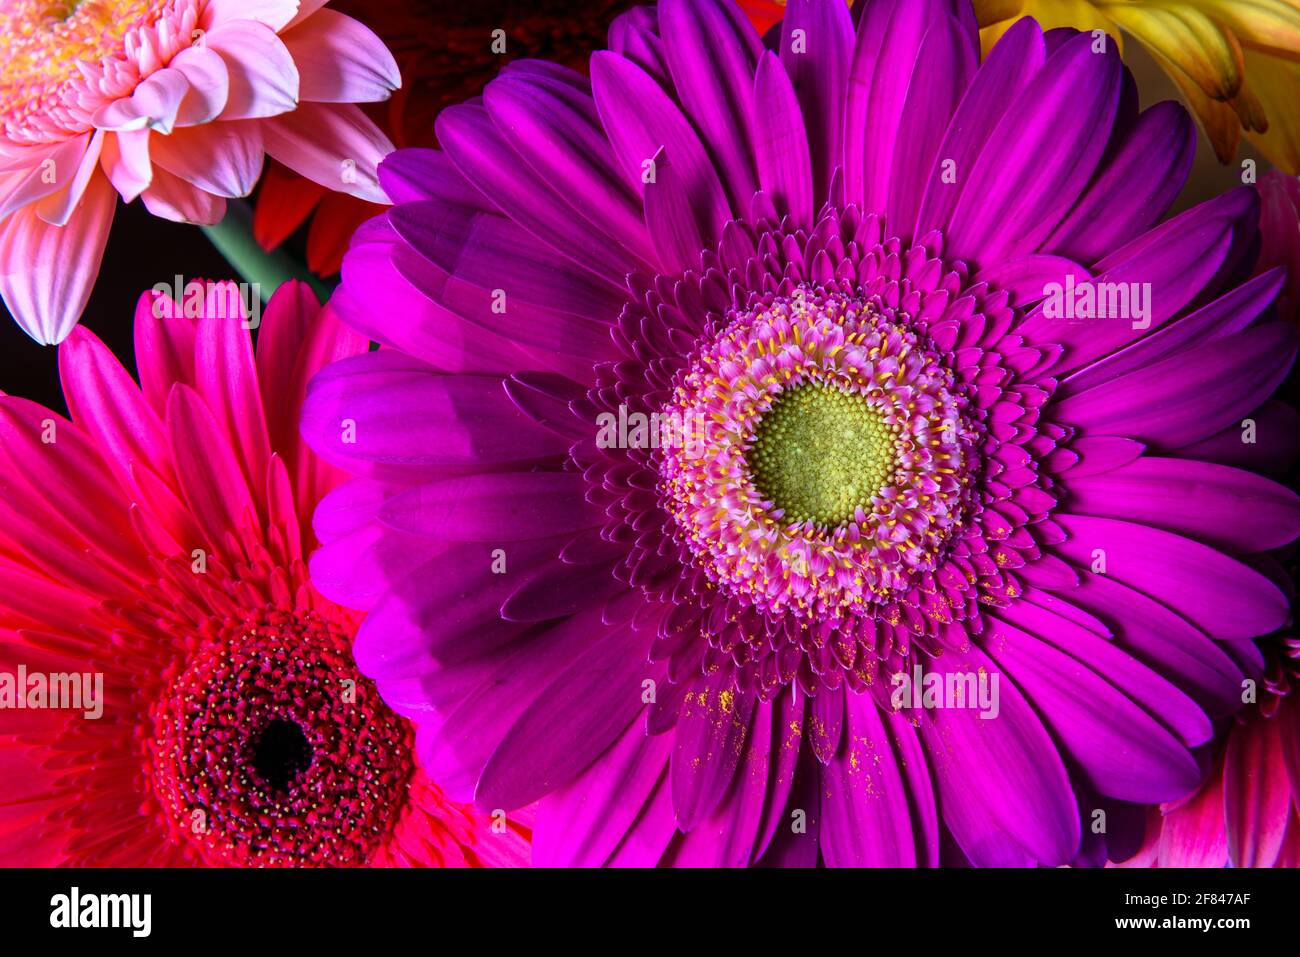 Gerbera fiori, piante naturali fresche da vicino. Bouquet floreale di fiori viola, rosa e rosso. Bellissimo motivo colorato con petali di fiori margherita Foto Stock